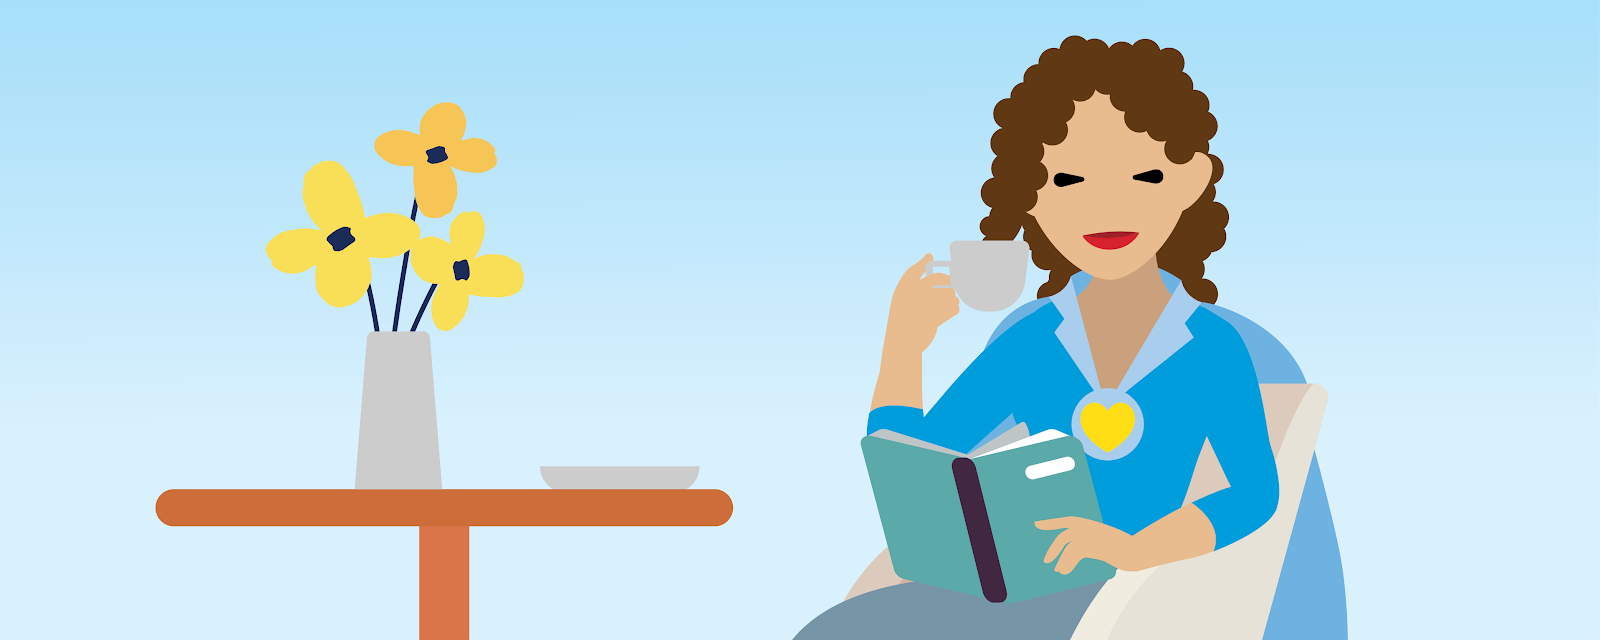 Illustration d’une femme assise sur une chaise, buvant du café et lisant un livre.